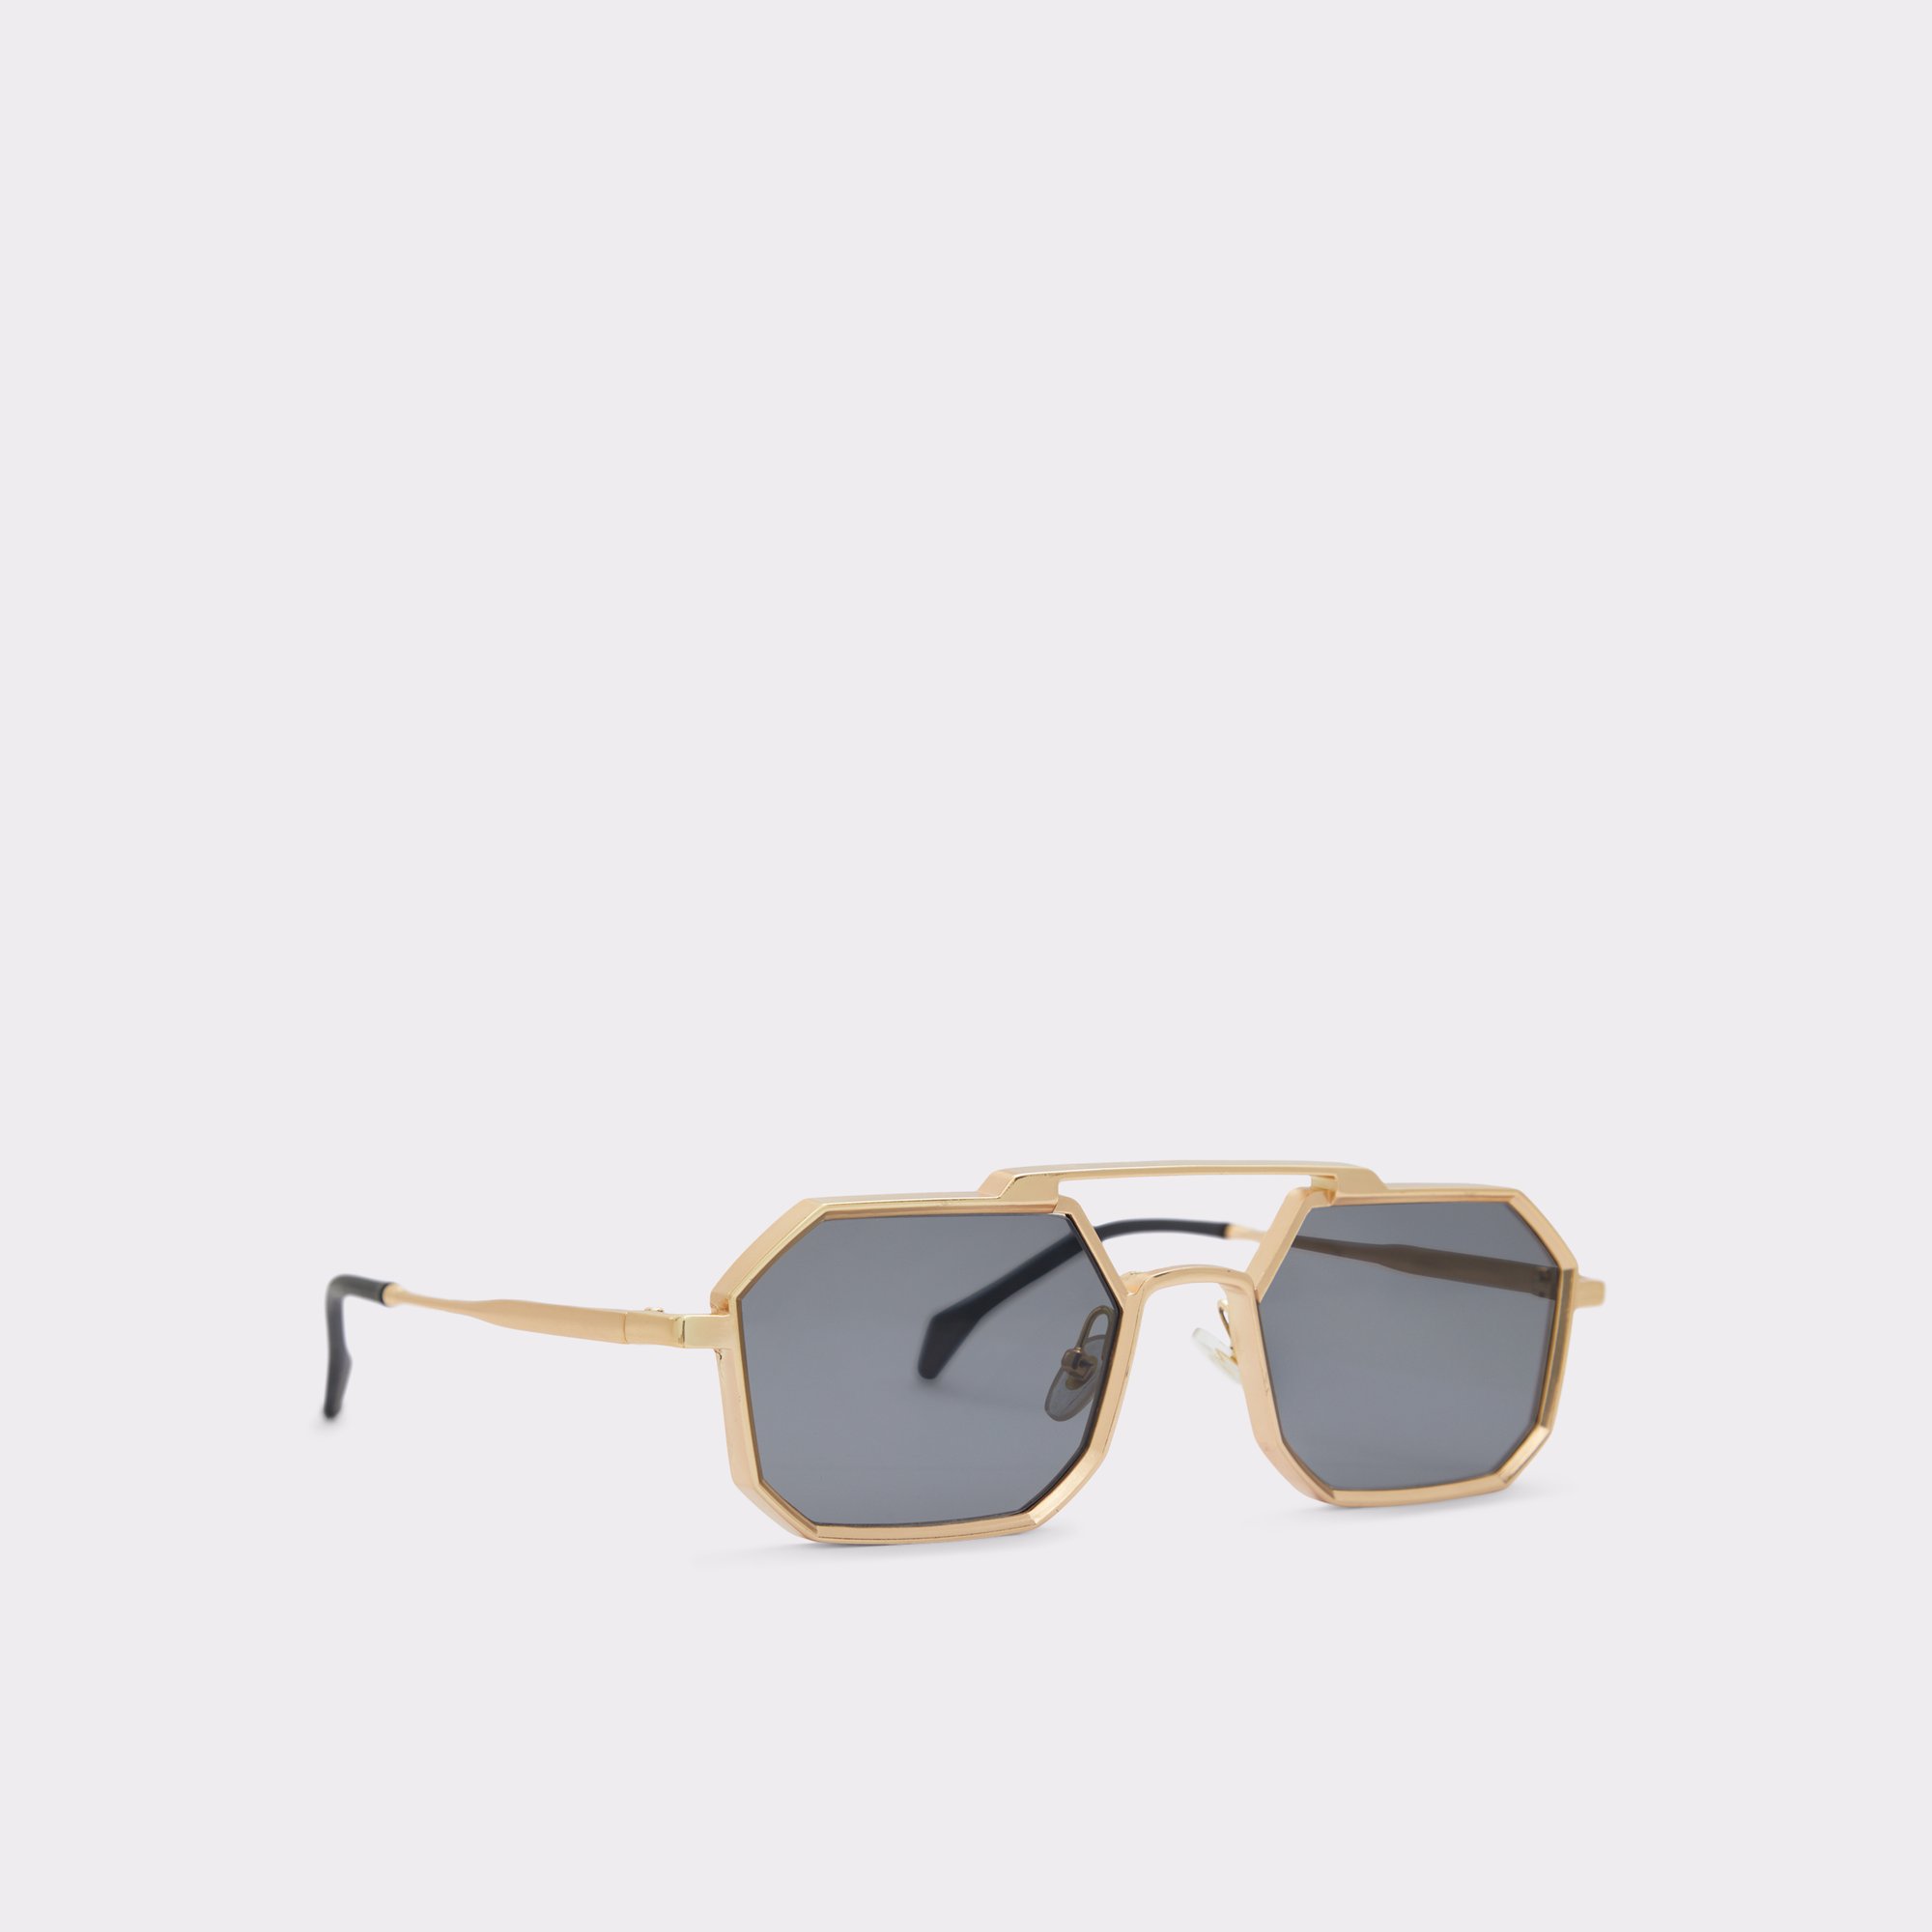 Cadarekin Gold Men's Sunglasses | ALDO Canada